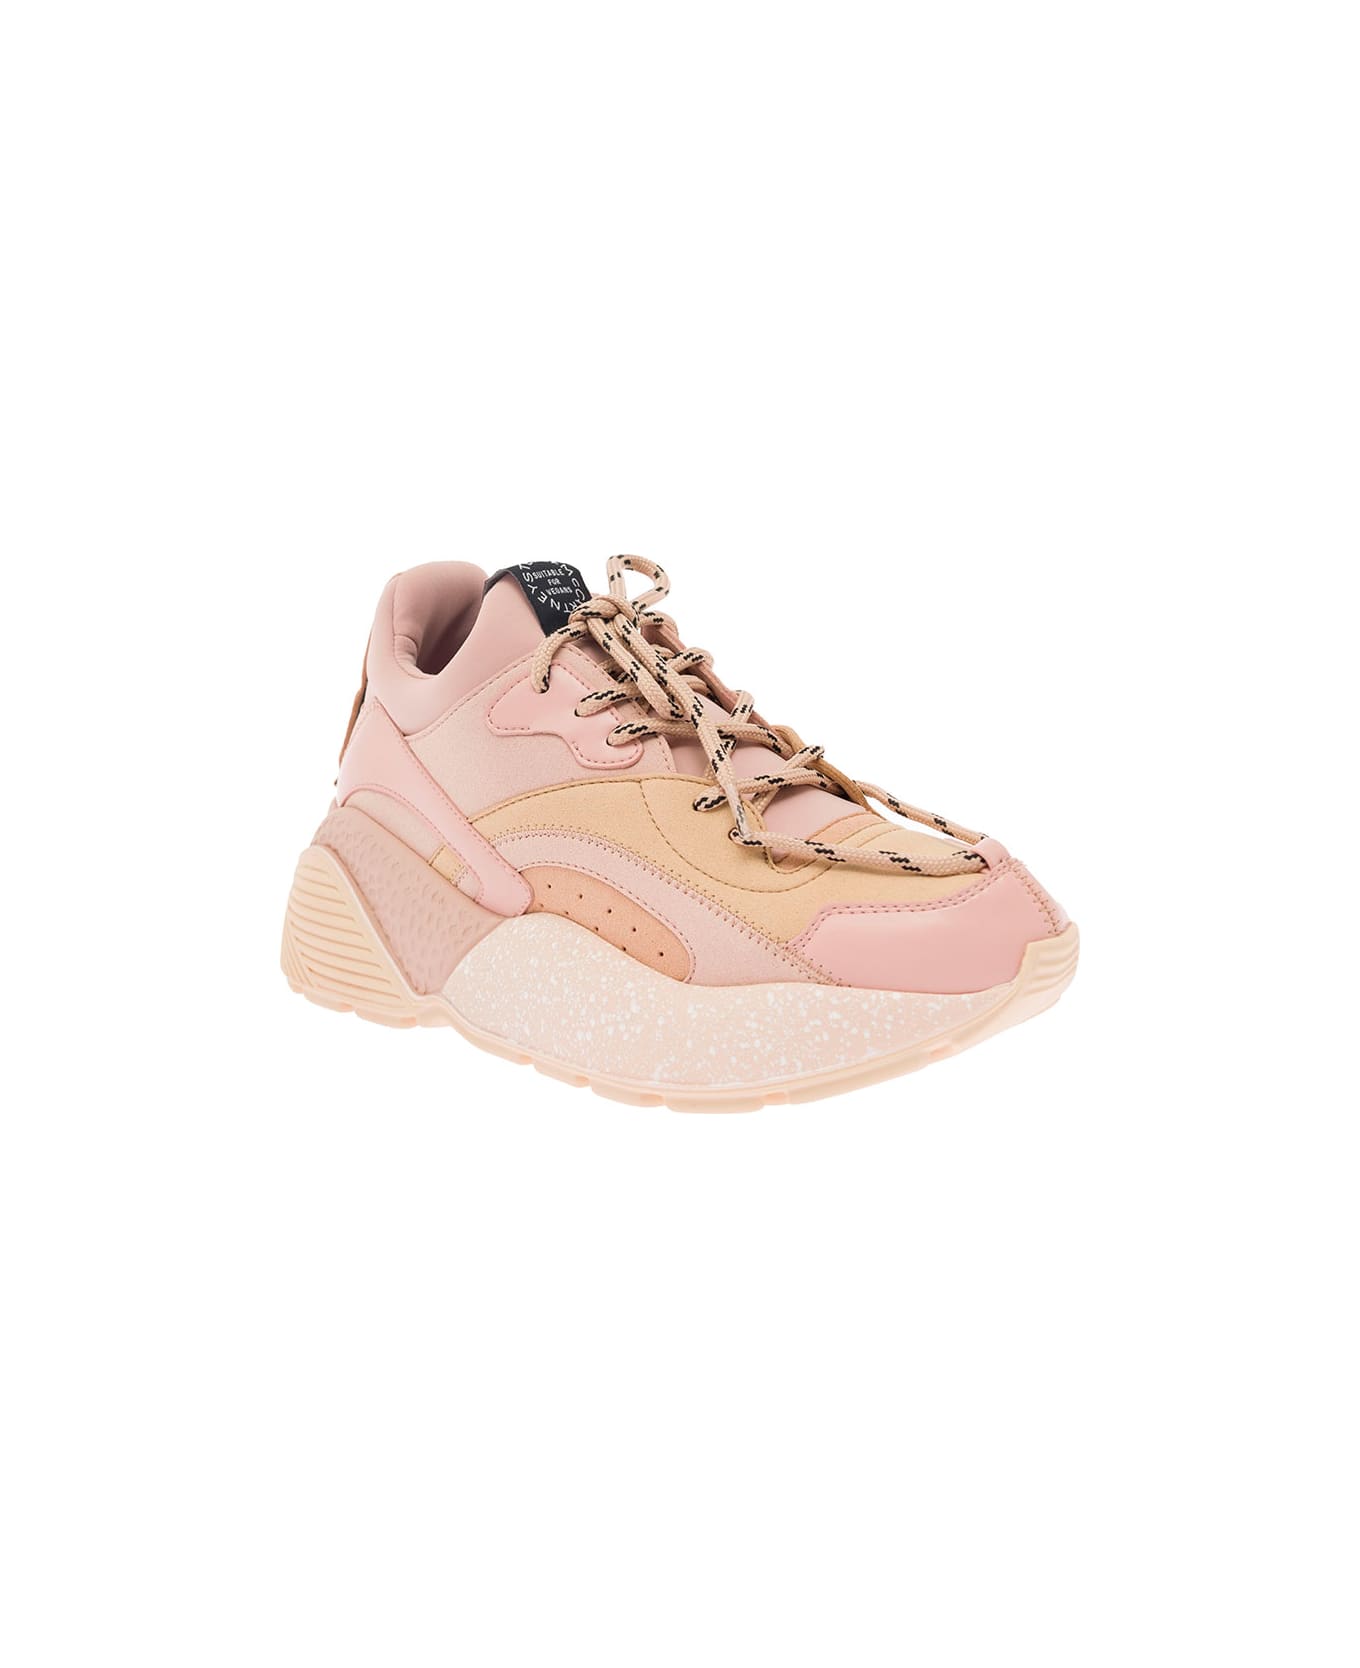 Stella McCartney Eclypse Sneakers - Pink